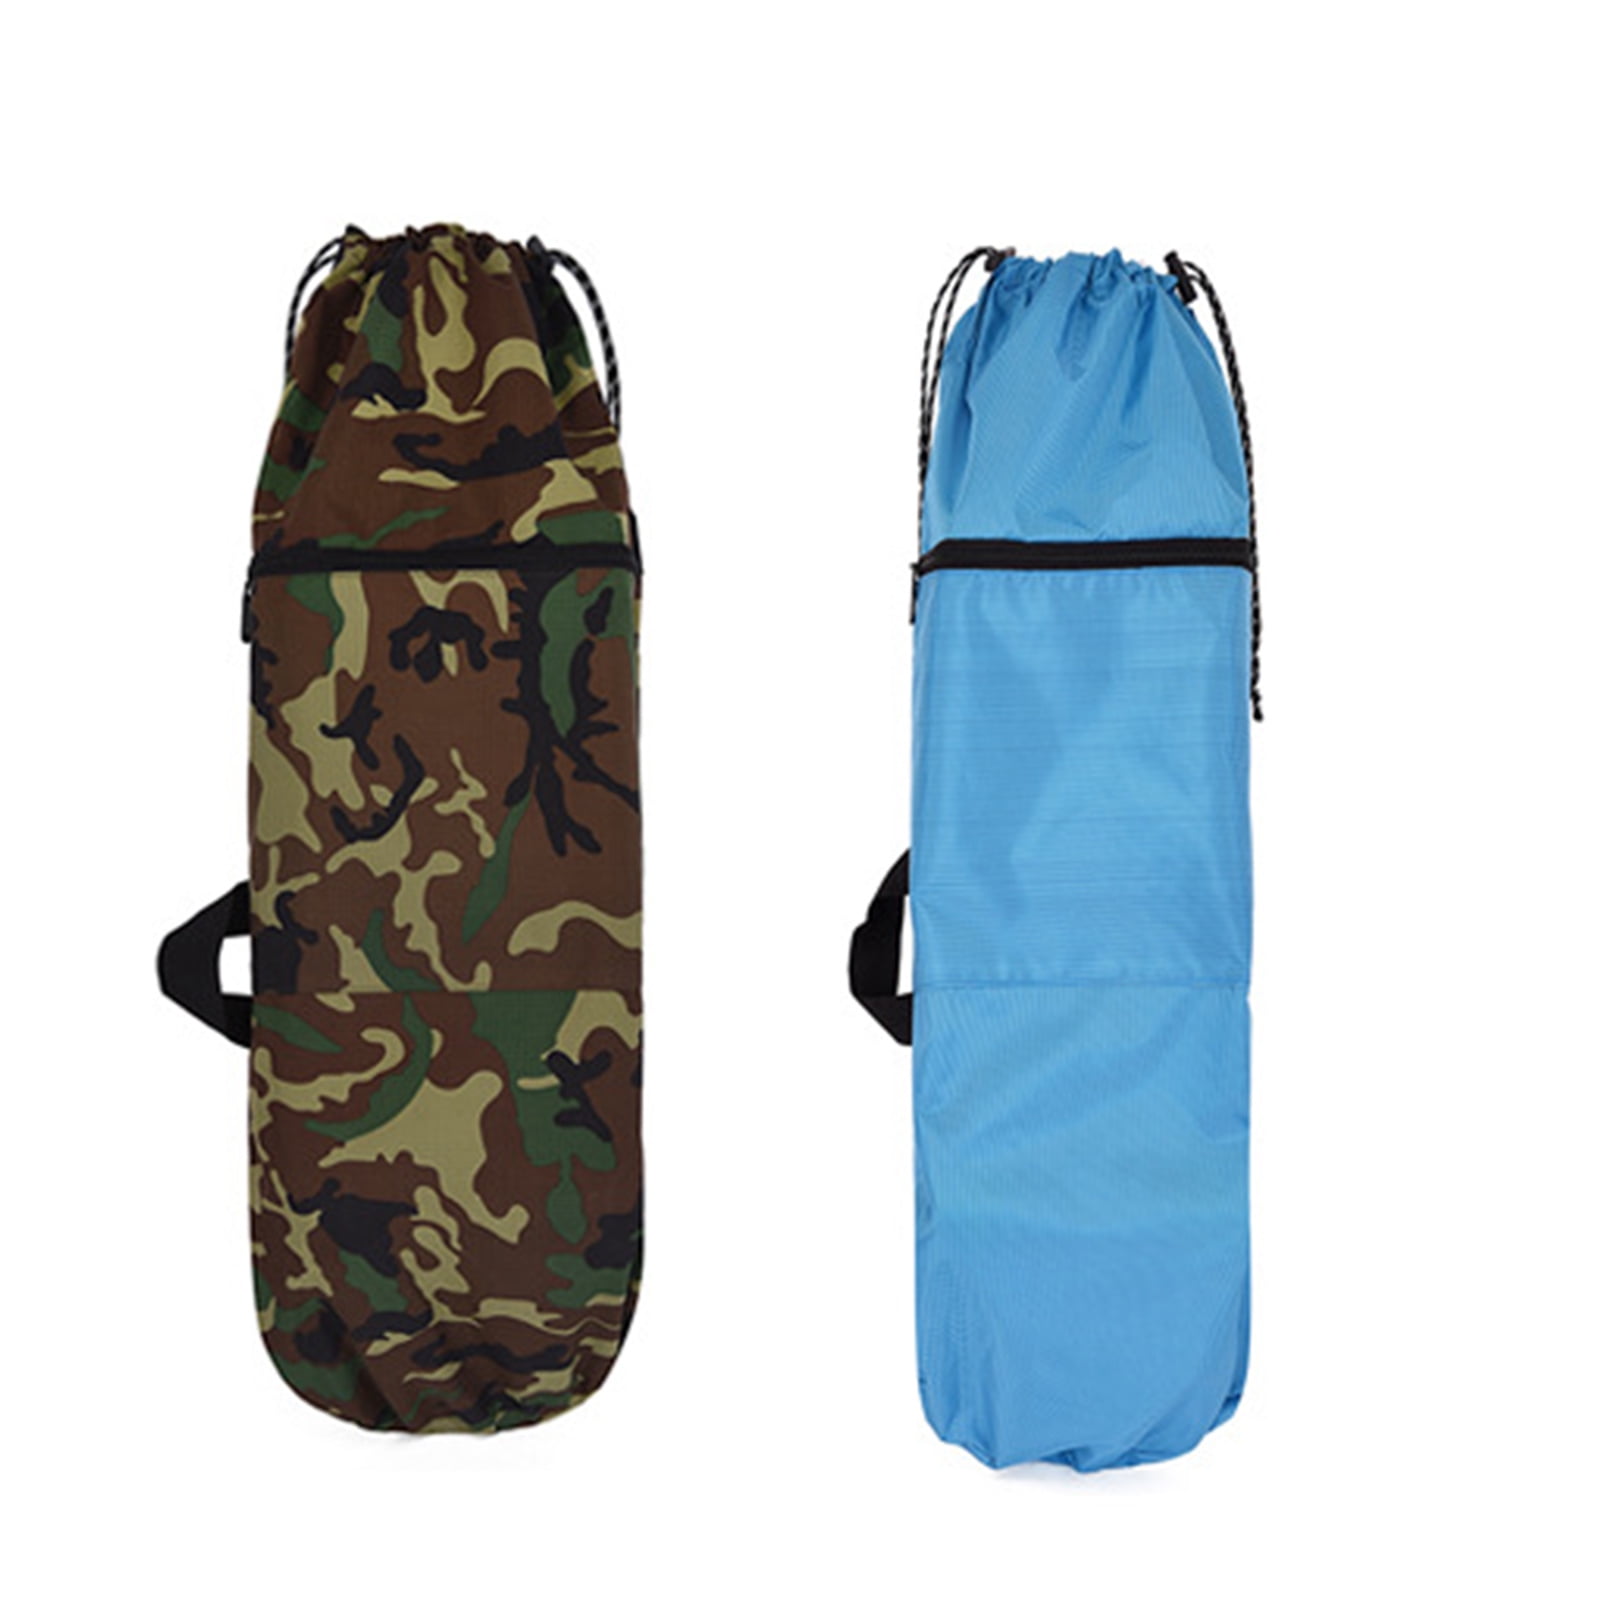 SPRING PARK Skateboard Backpacks Bag with Adjustable Shoulder Straps,Water Proof Canvas Camouflage Zip Drawstring Skateboard Backpack for Electric Skateboard